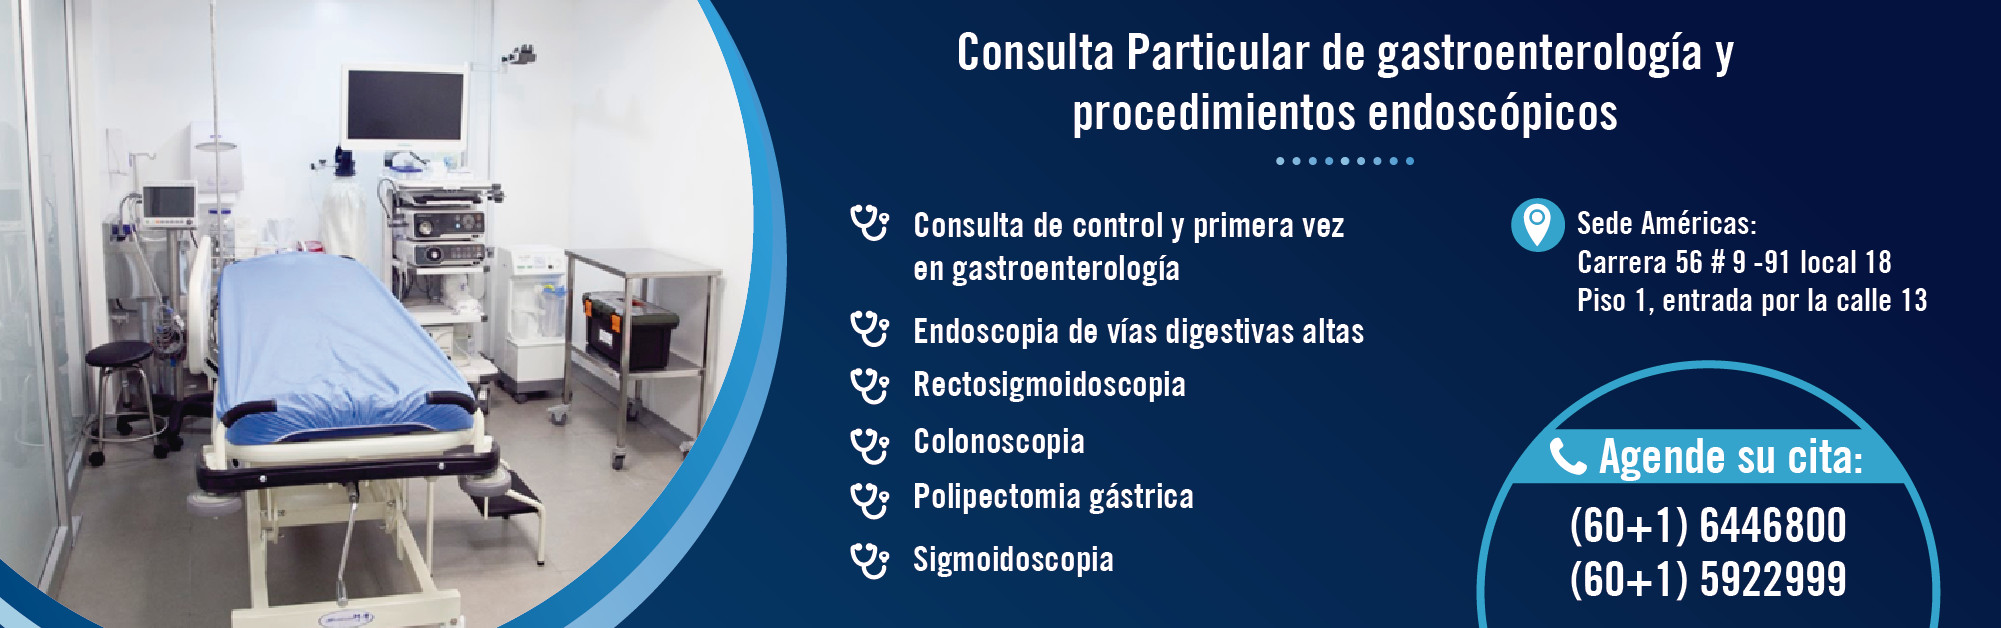 Consulta particular Gastroenterología